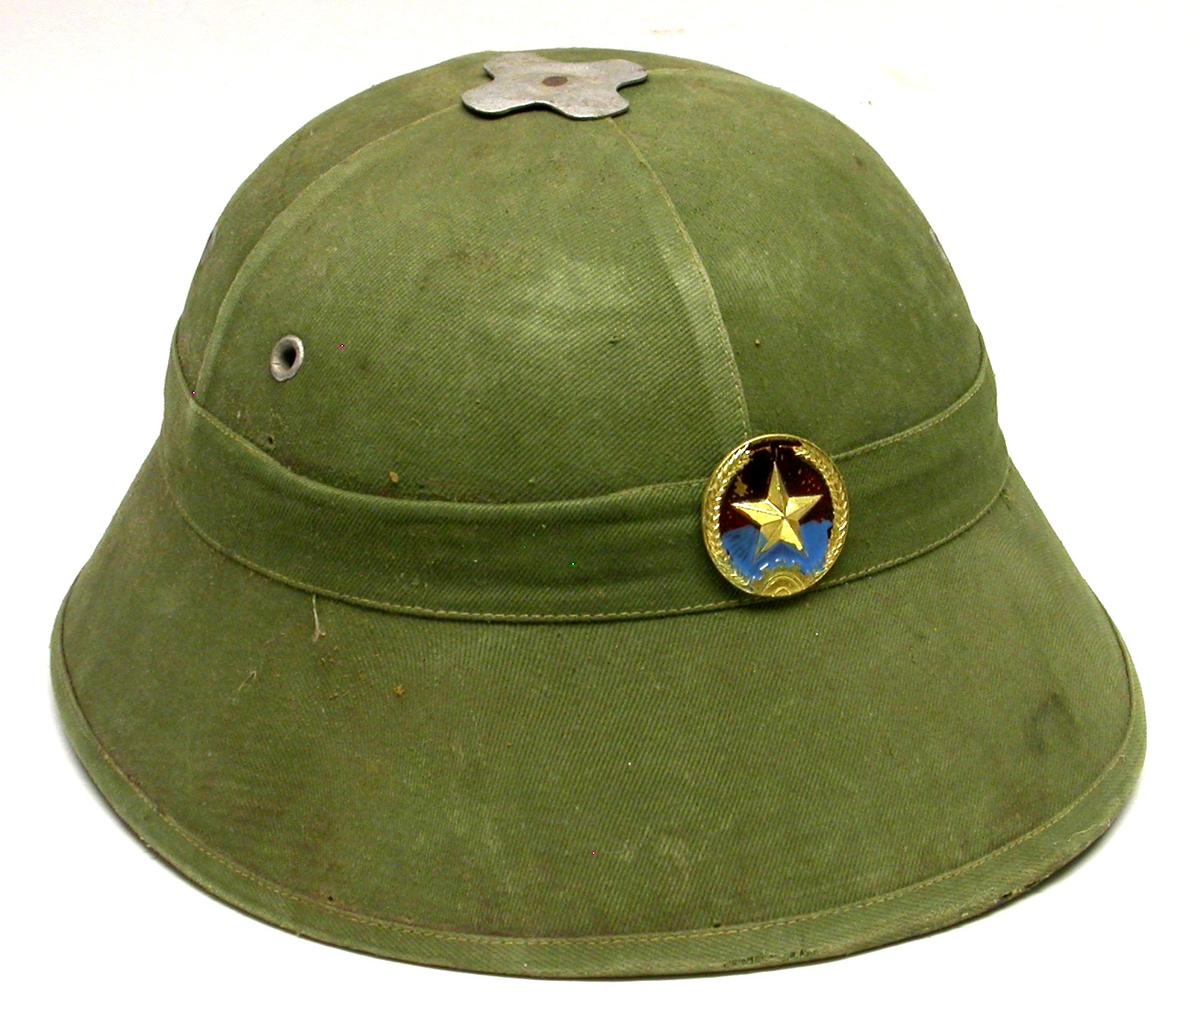 Vietnam War era Viet Cong Pith Helmet (SMD)